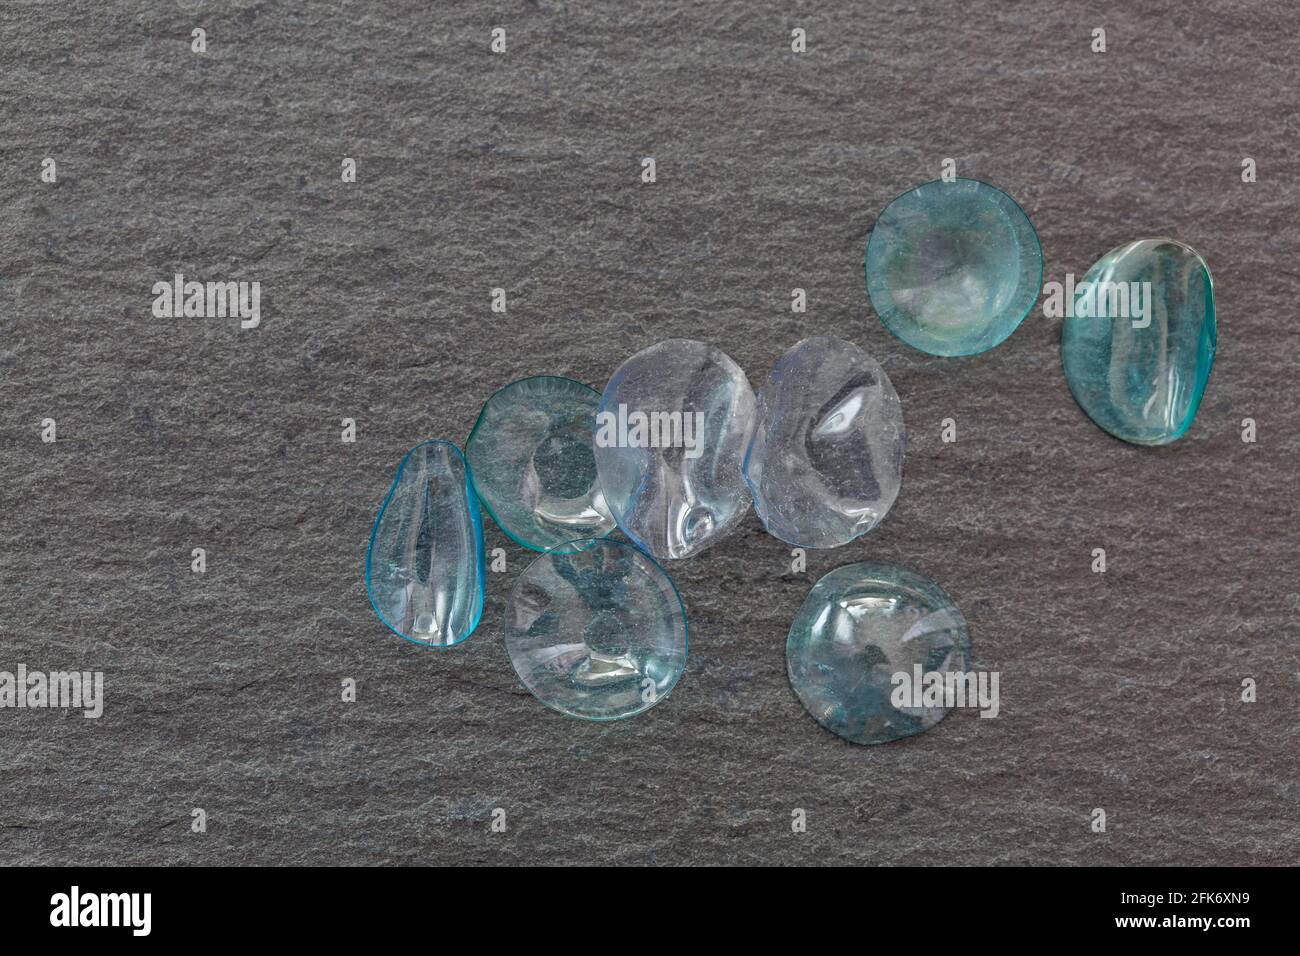 Gruppe von gebrauchten monatlichen Einweg-Kontaktlinsen auf schwarzem Stein Hintergrund. Getrocknete und staubige Kontaktlinse mit Copyspace Stockfoto